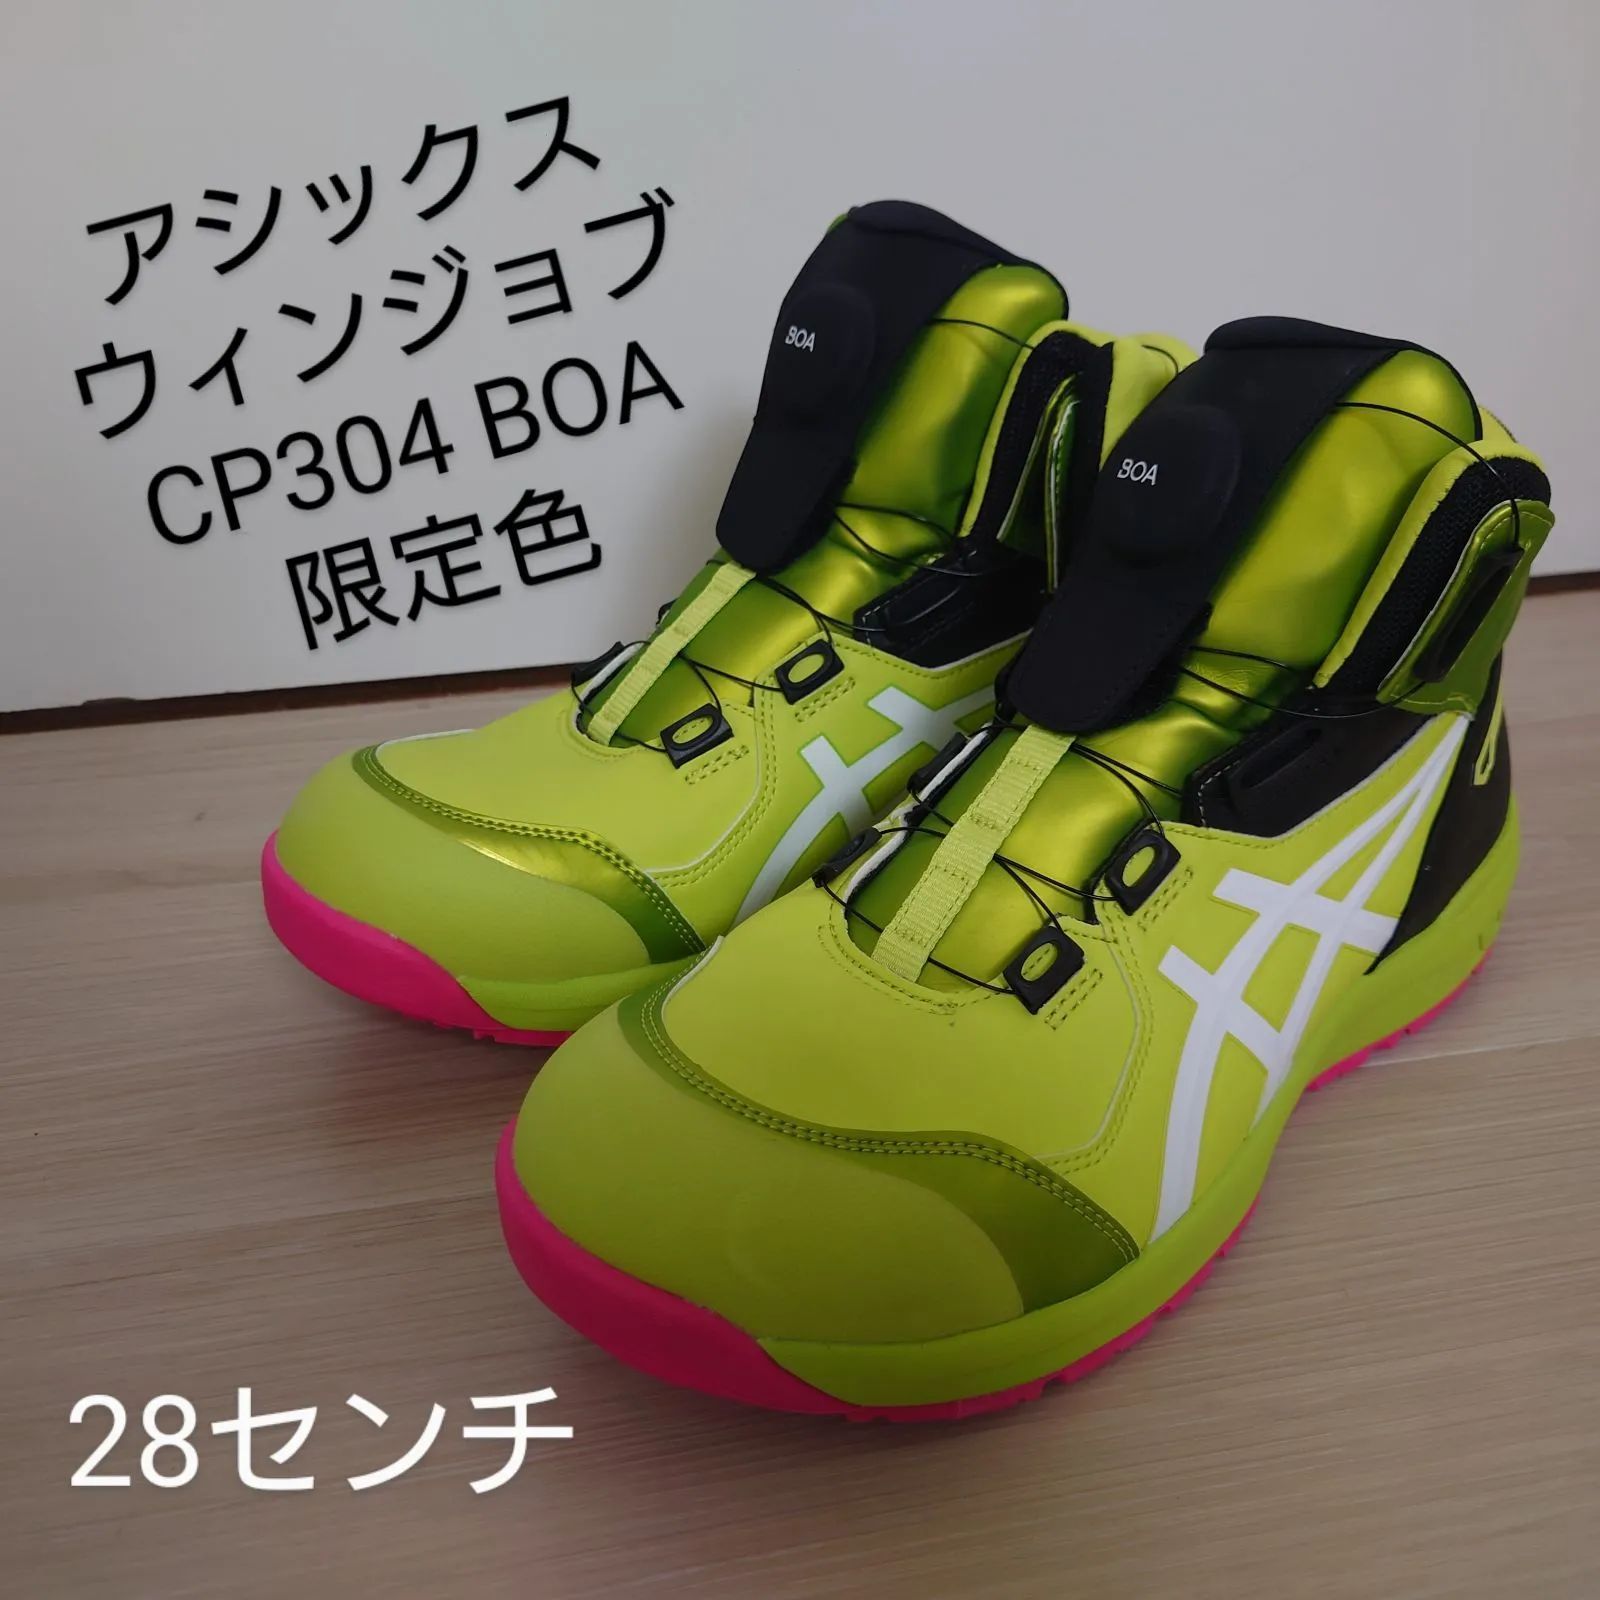 アシックス安全靴残りわずか【新品】 28cm アシックス安全靴CP304 【限定色】ネオンライム